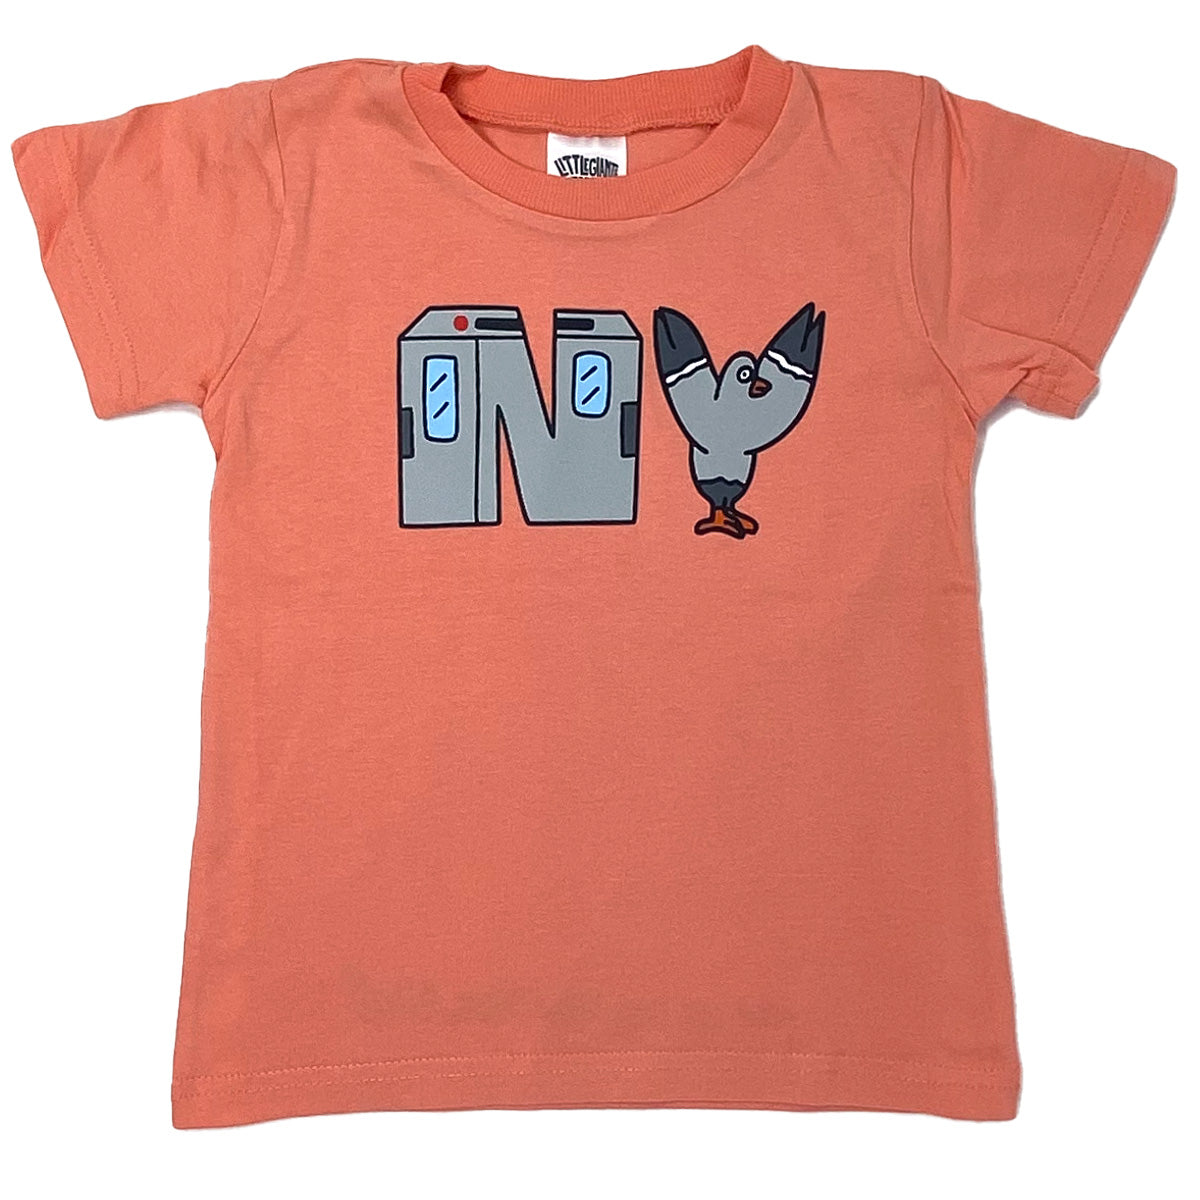 N.Y. T-Shirt (Coral)